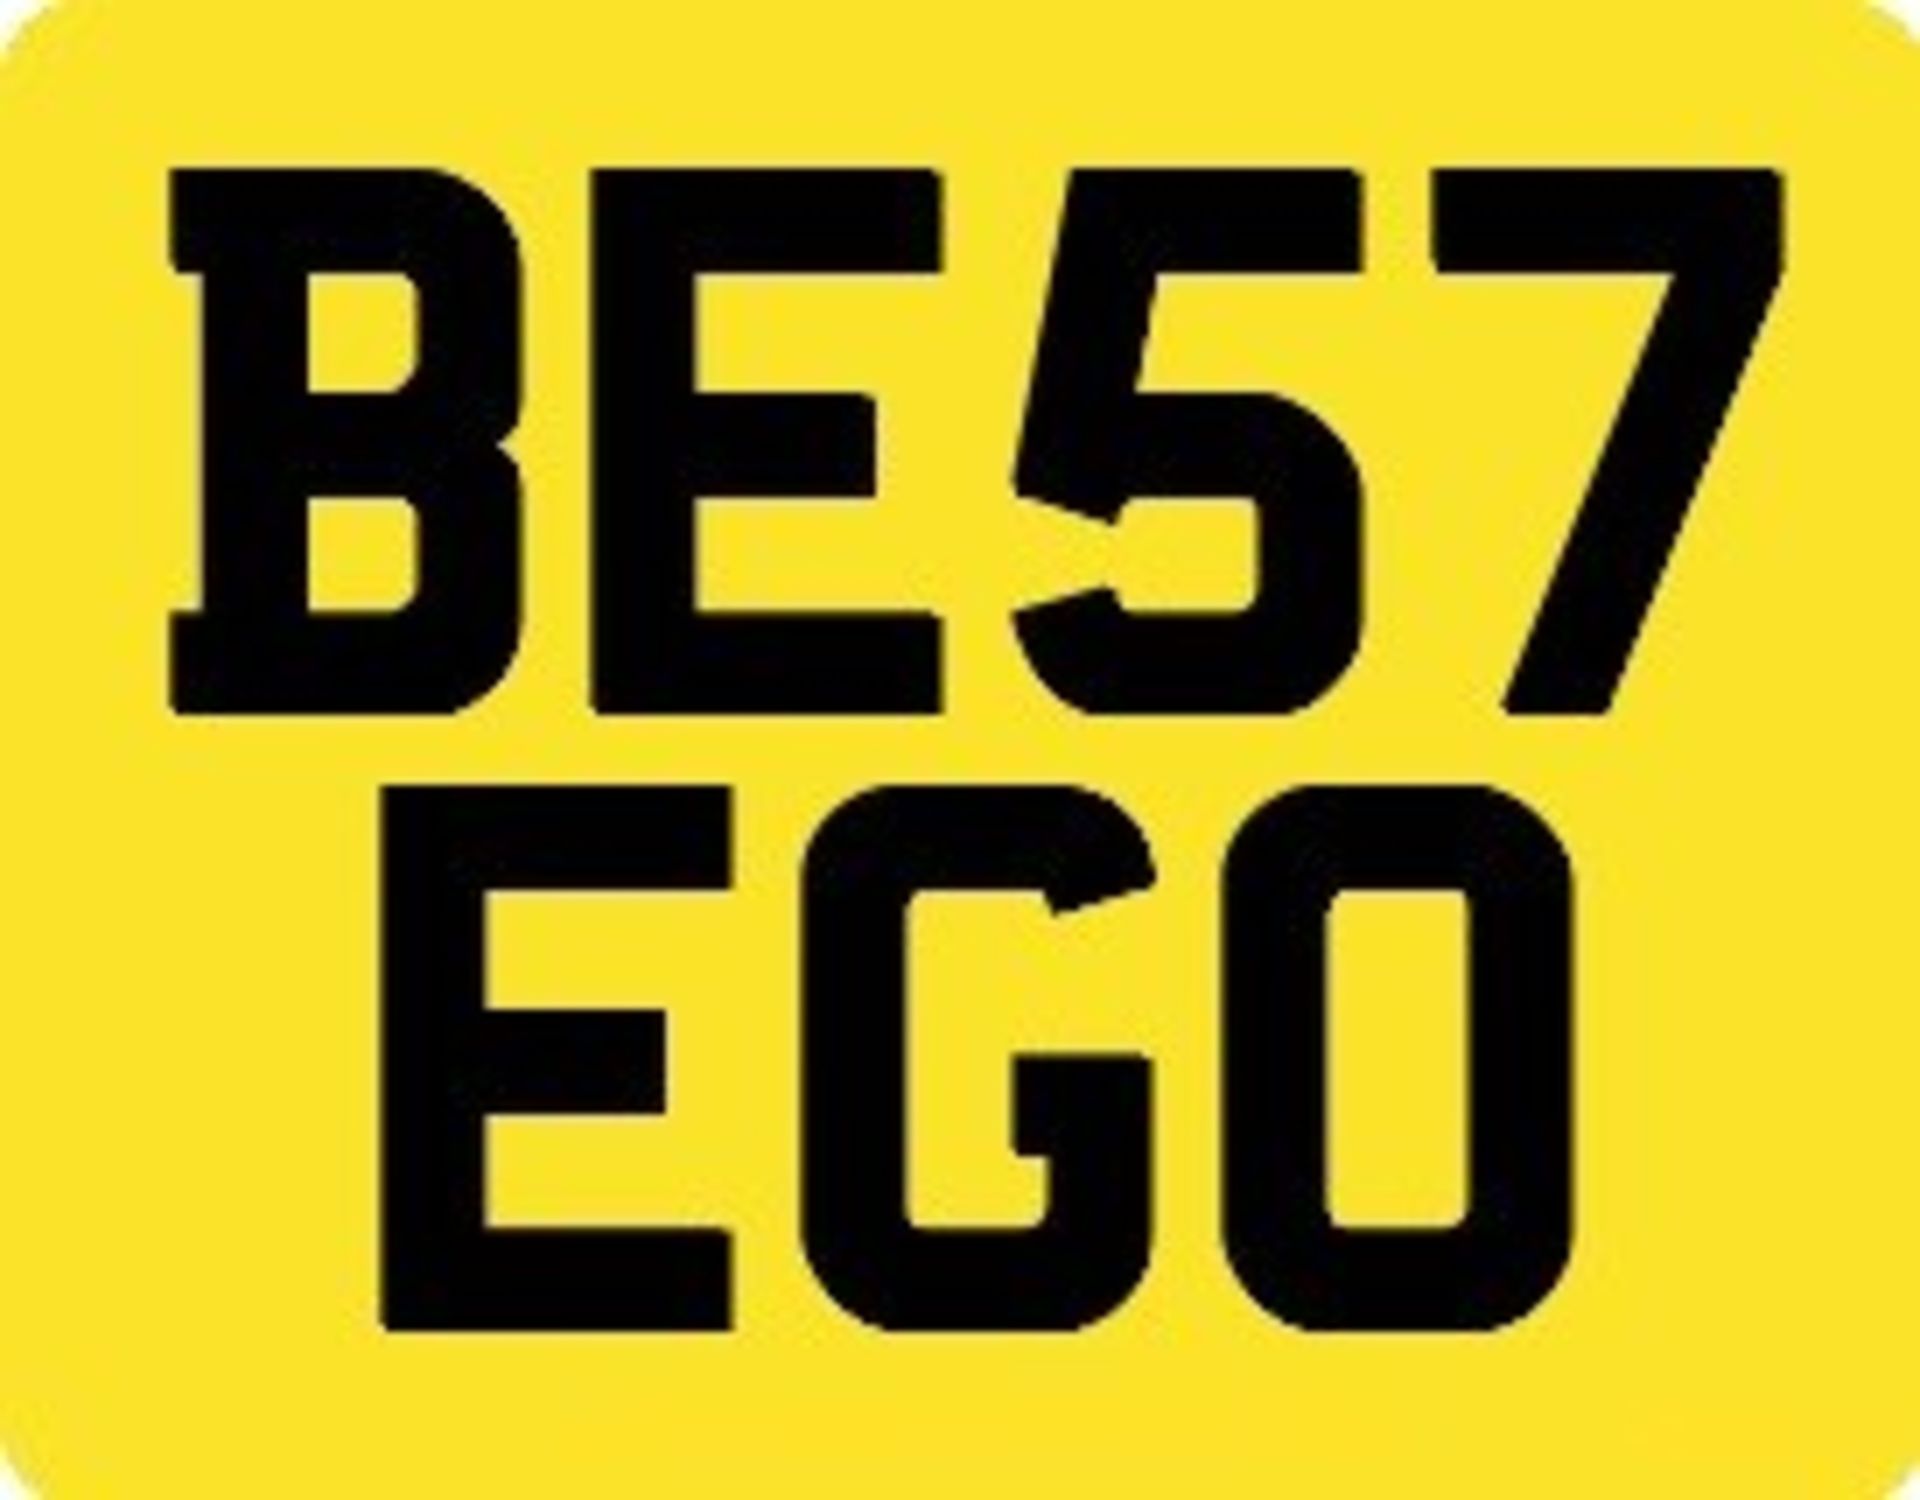 BE57 EGO Registration number